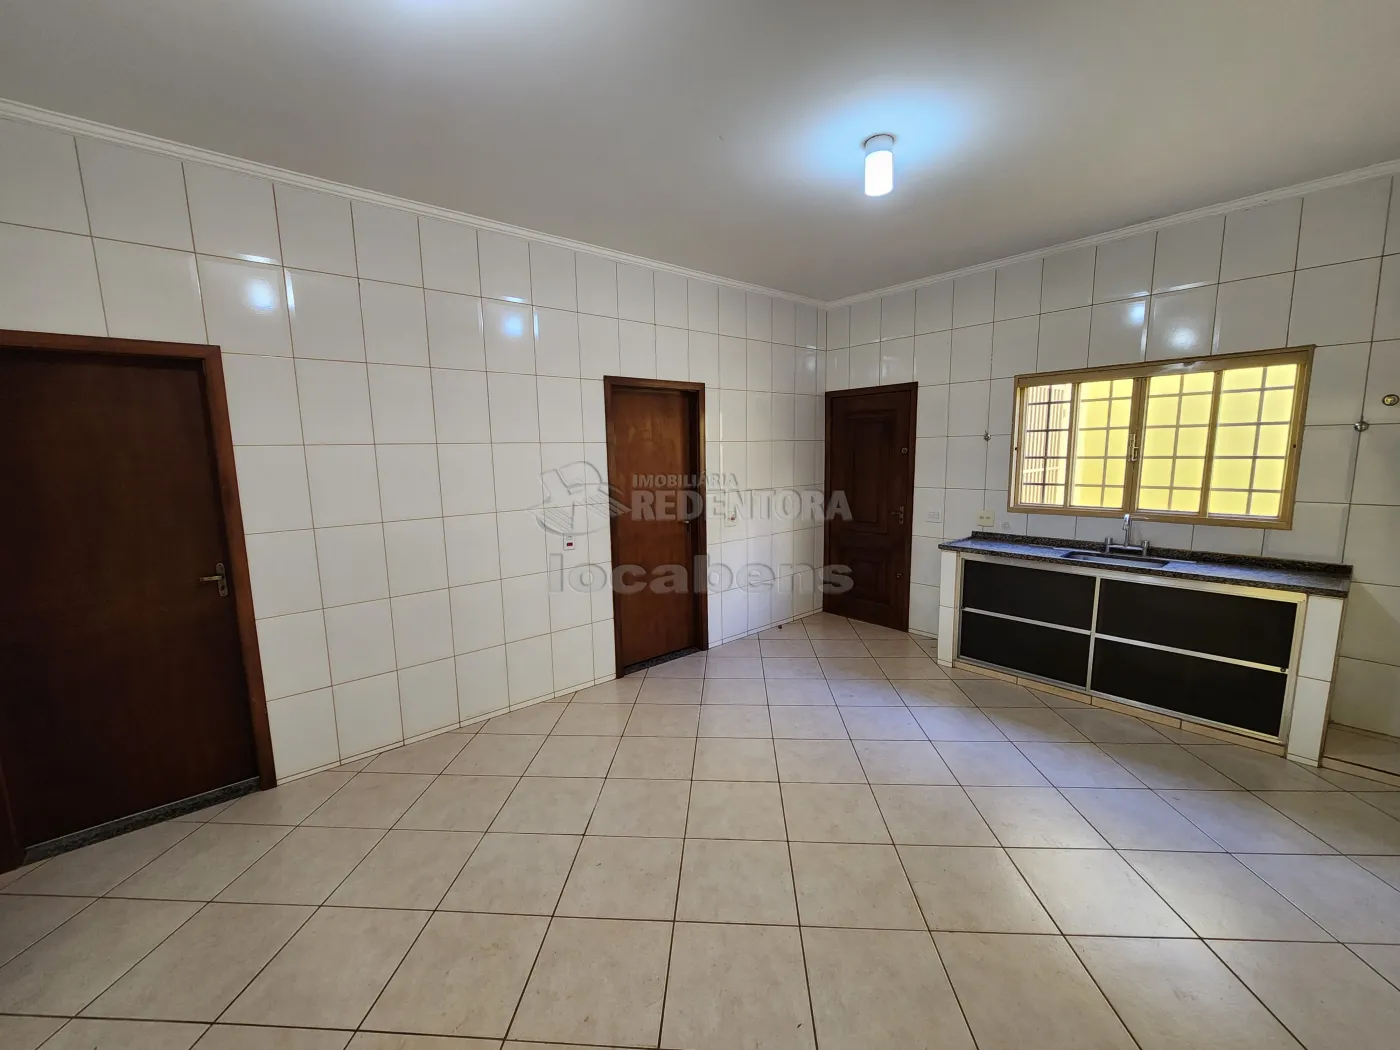 Alugar Casa / Padrão em São José do Rio Preto apenas R$ 1.650,00 - Foto 2